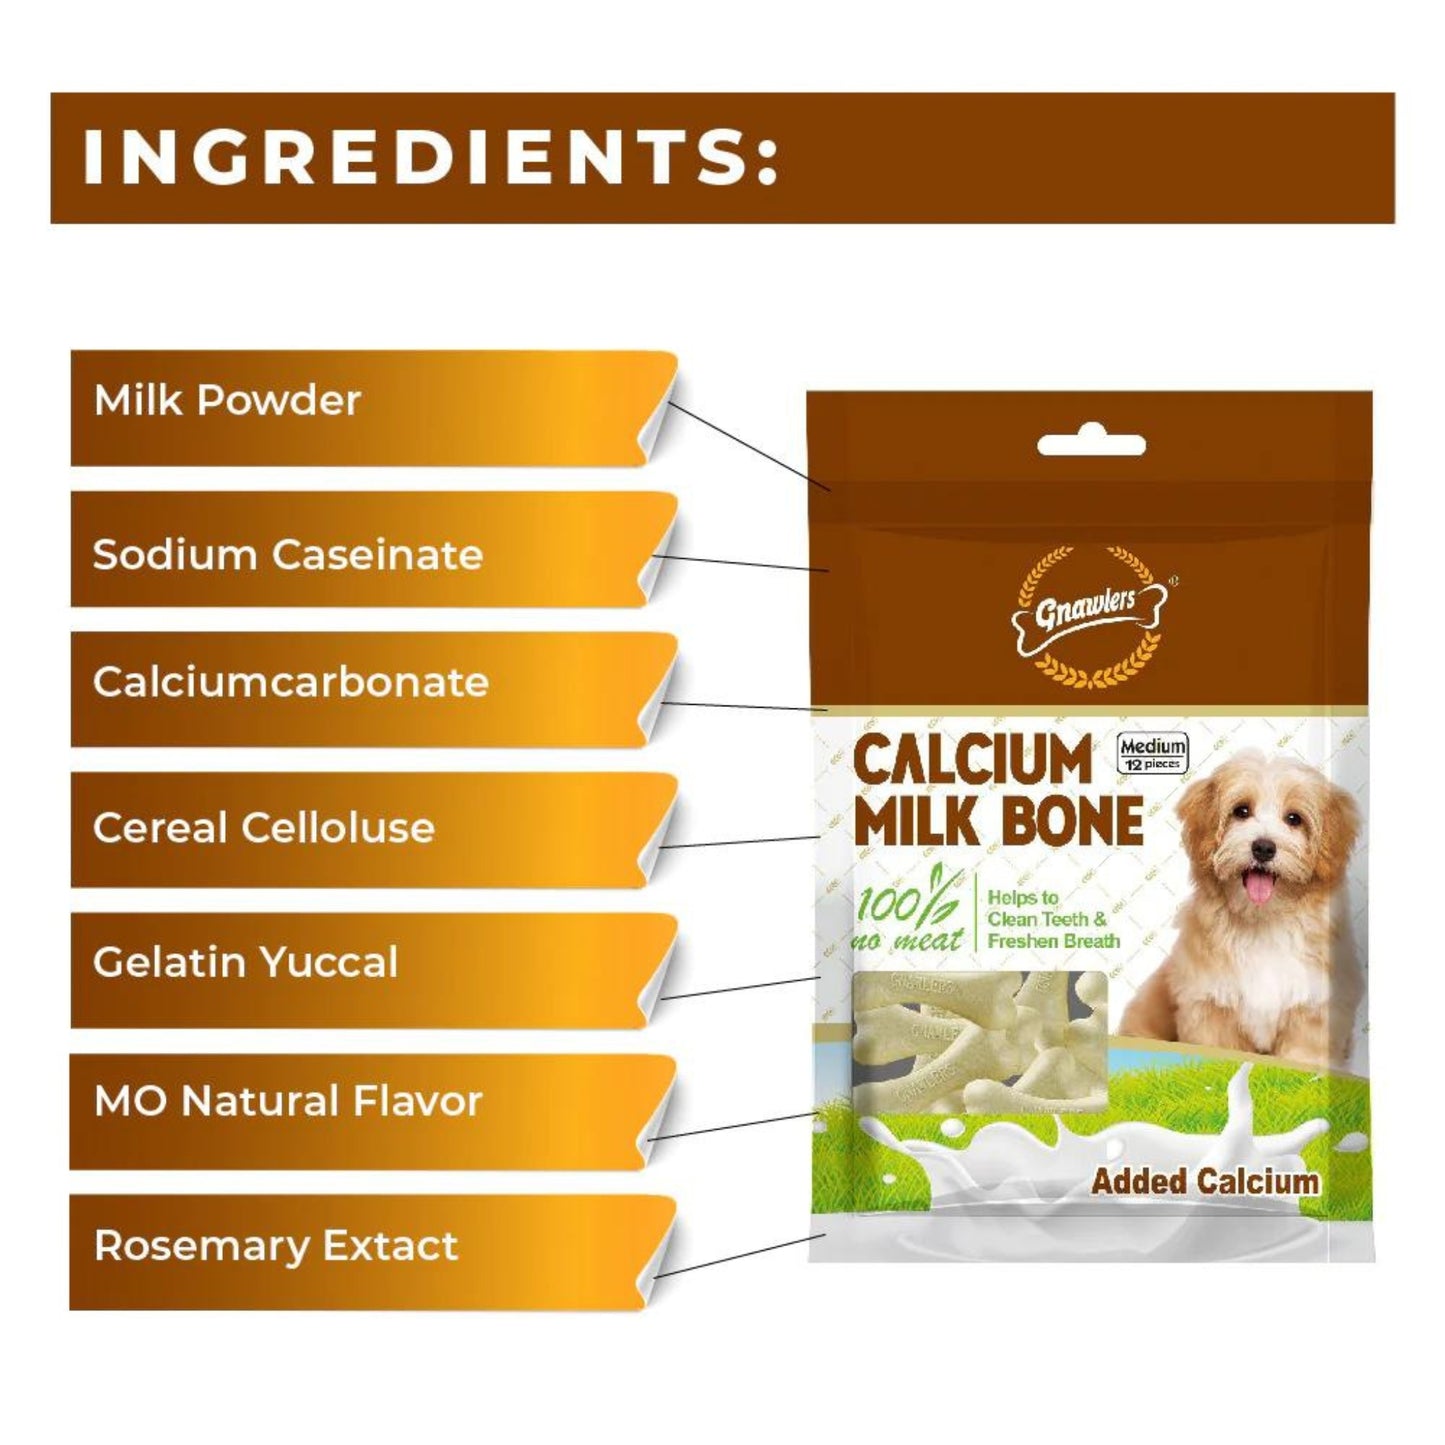 Gnawlers Calcium Milk Bones Dog Treats 12Pcs (Medium), Pack of 3